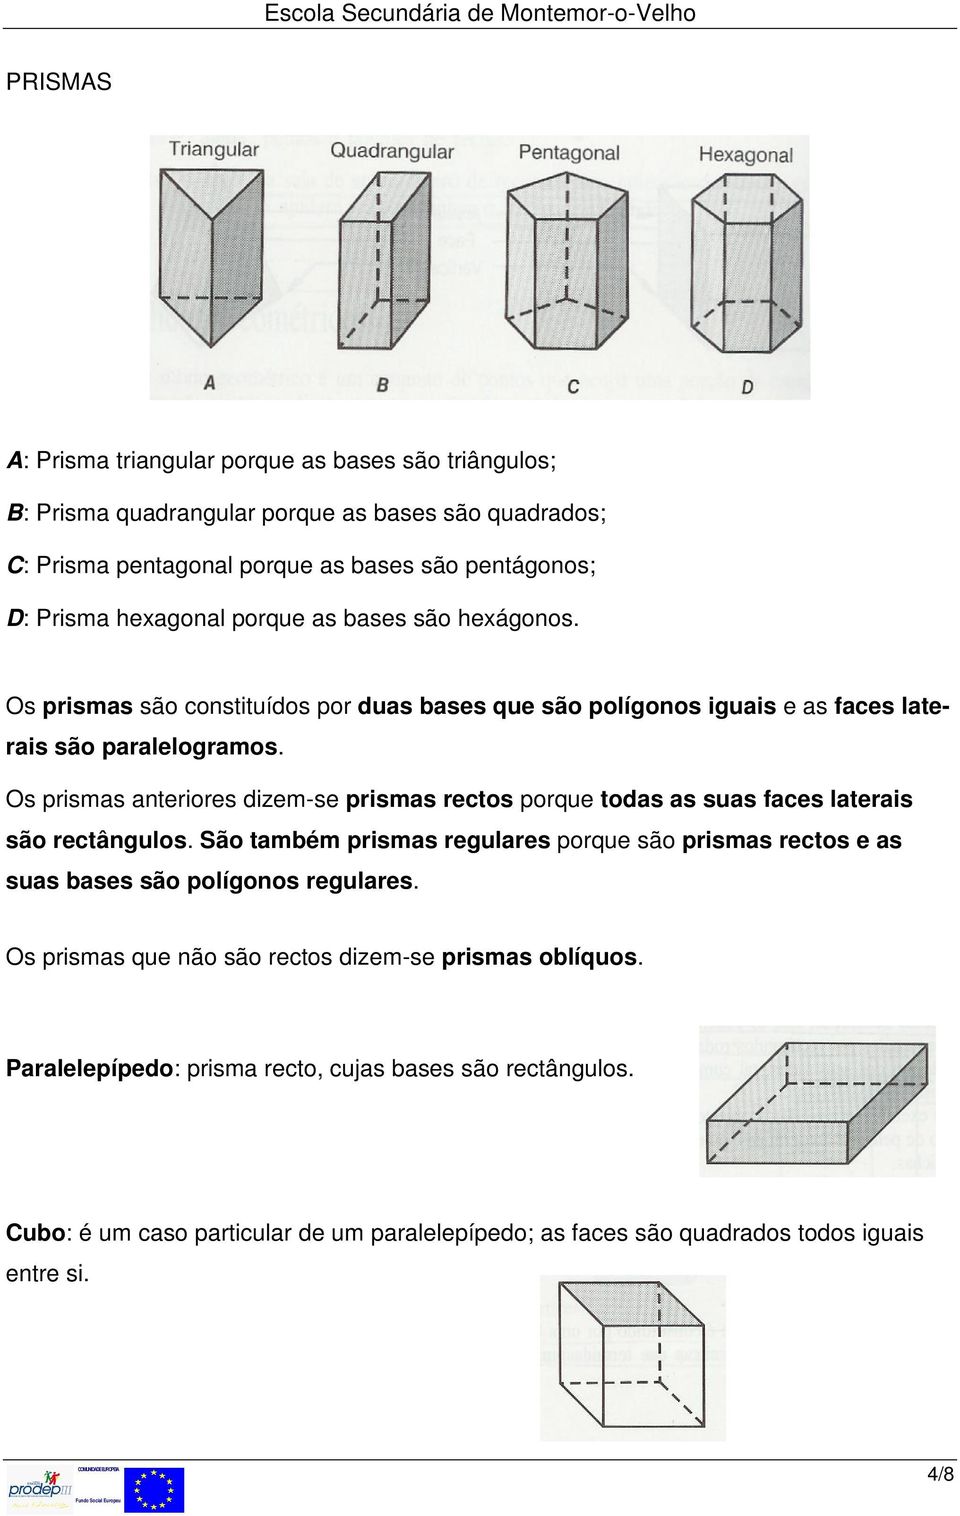 Os prismas anteriores dizem-se prismas rectos porque todas as suas faces laterais são rectângulos.